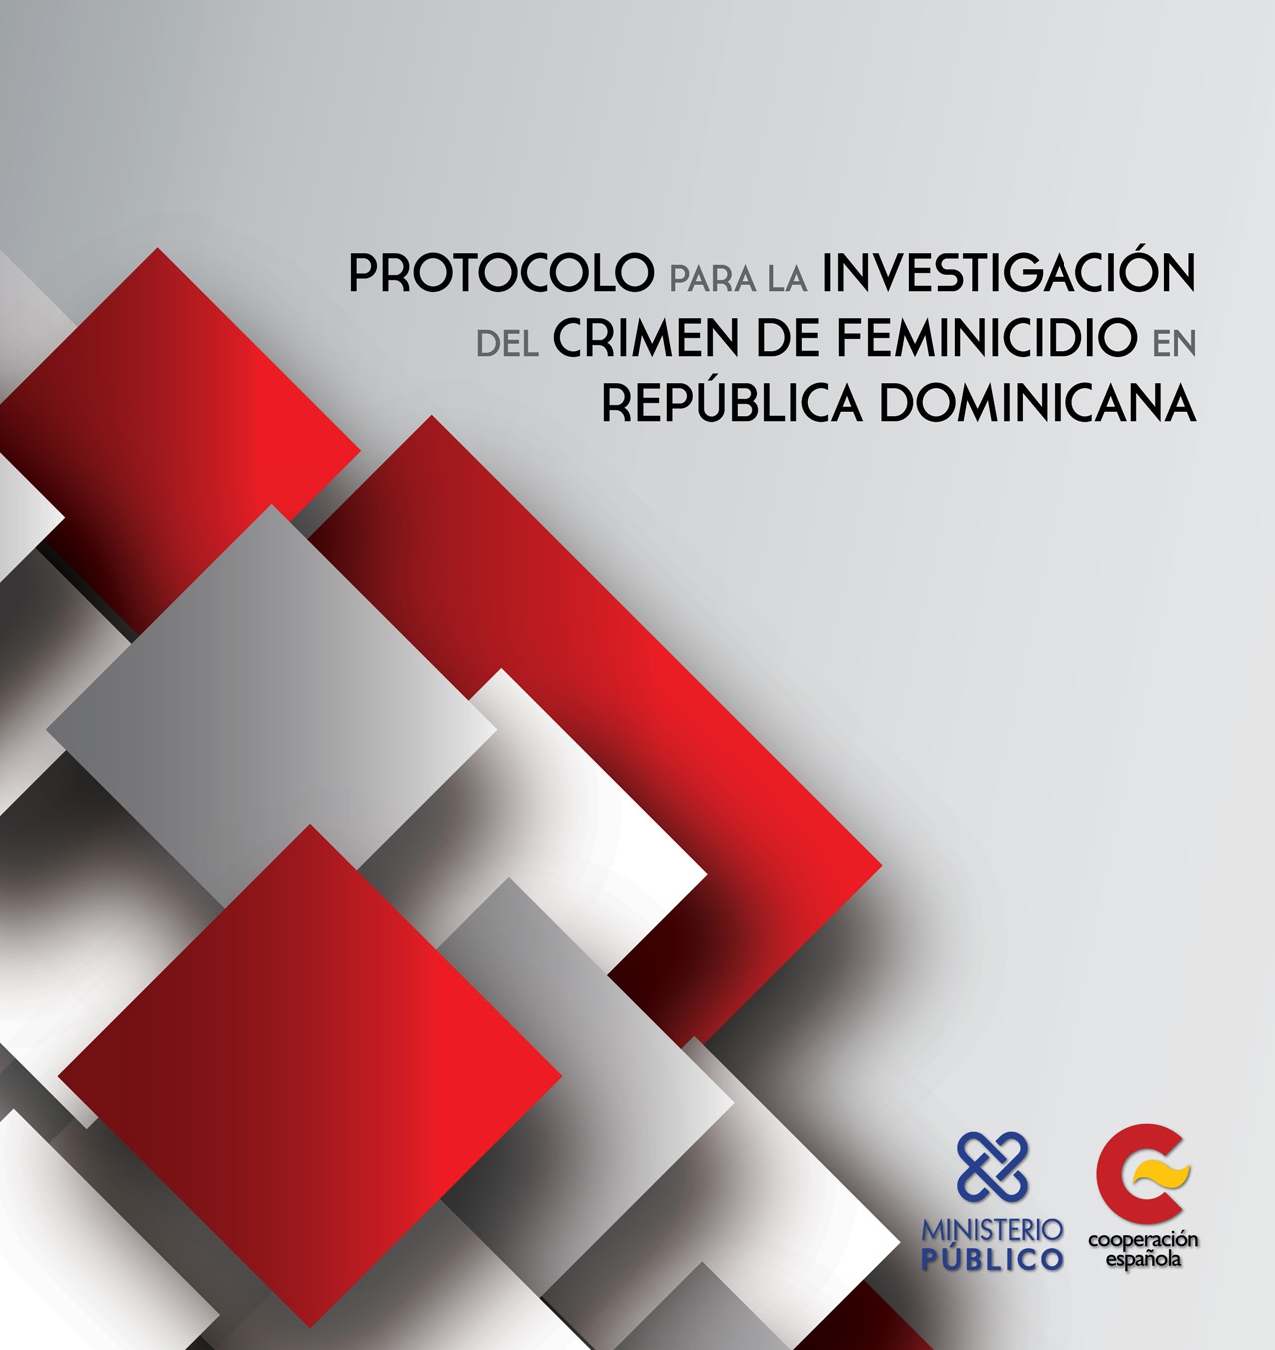 Protocolo para la investigación del crimen de feminicidio en República Dominicana